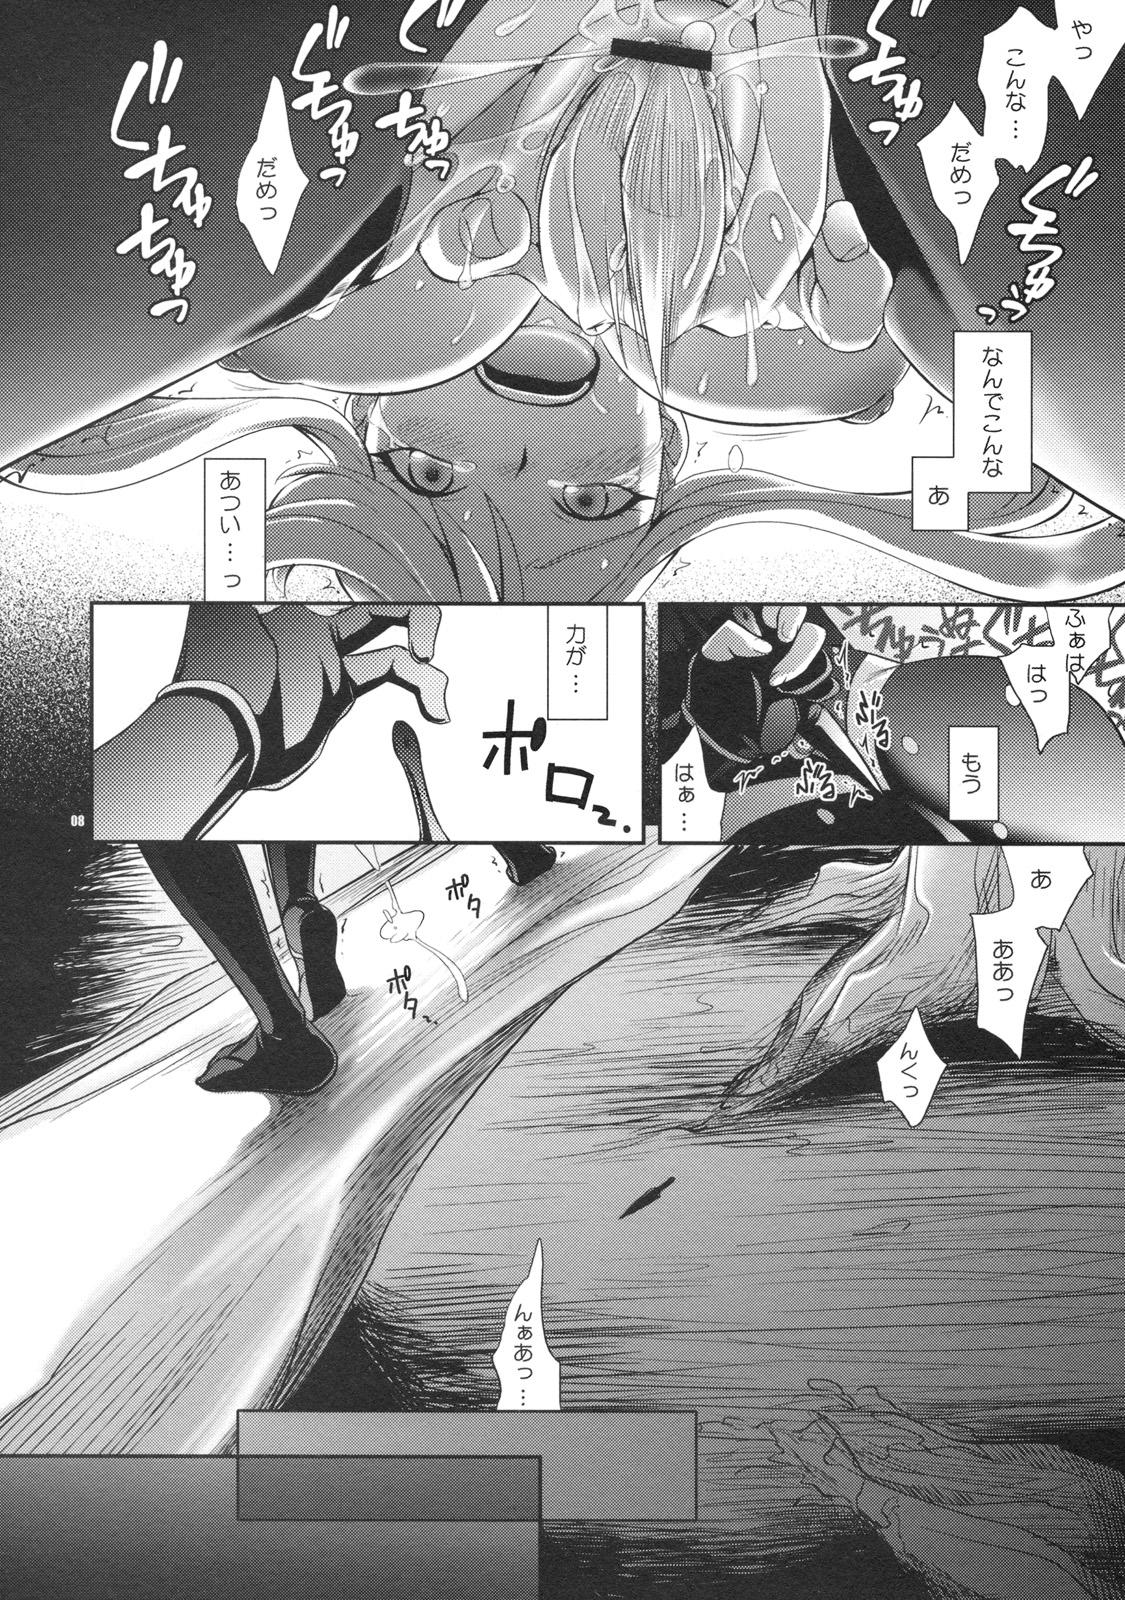 Tats Oosame Kudasai Kenshin-sama! - Sengoku basara Stranger - Page 7